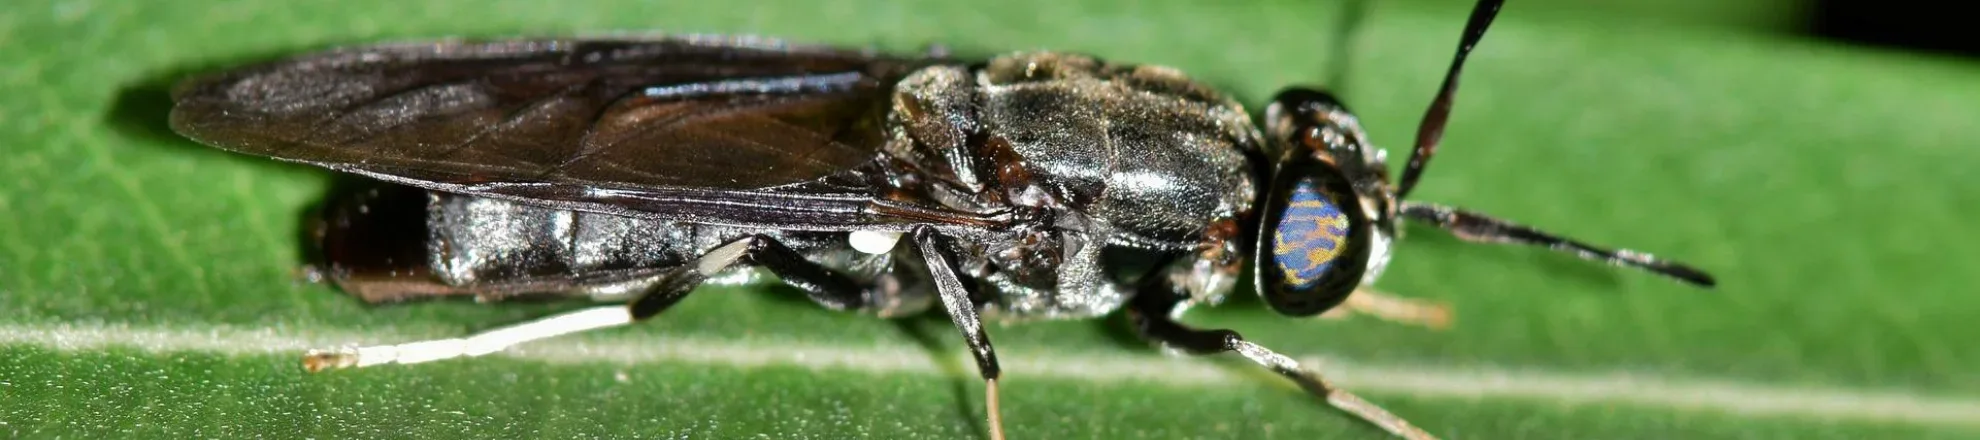 Insecten kunnen mogelijk een rol spelen in stikstofreductie 